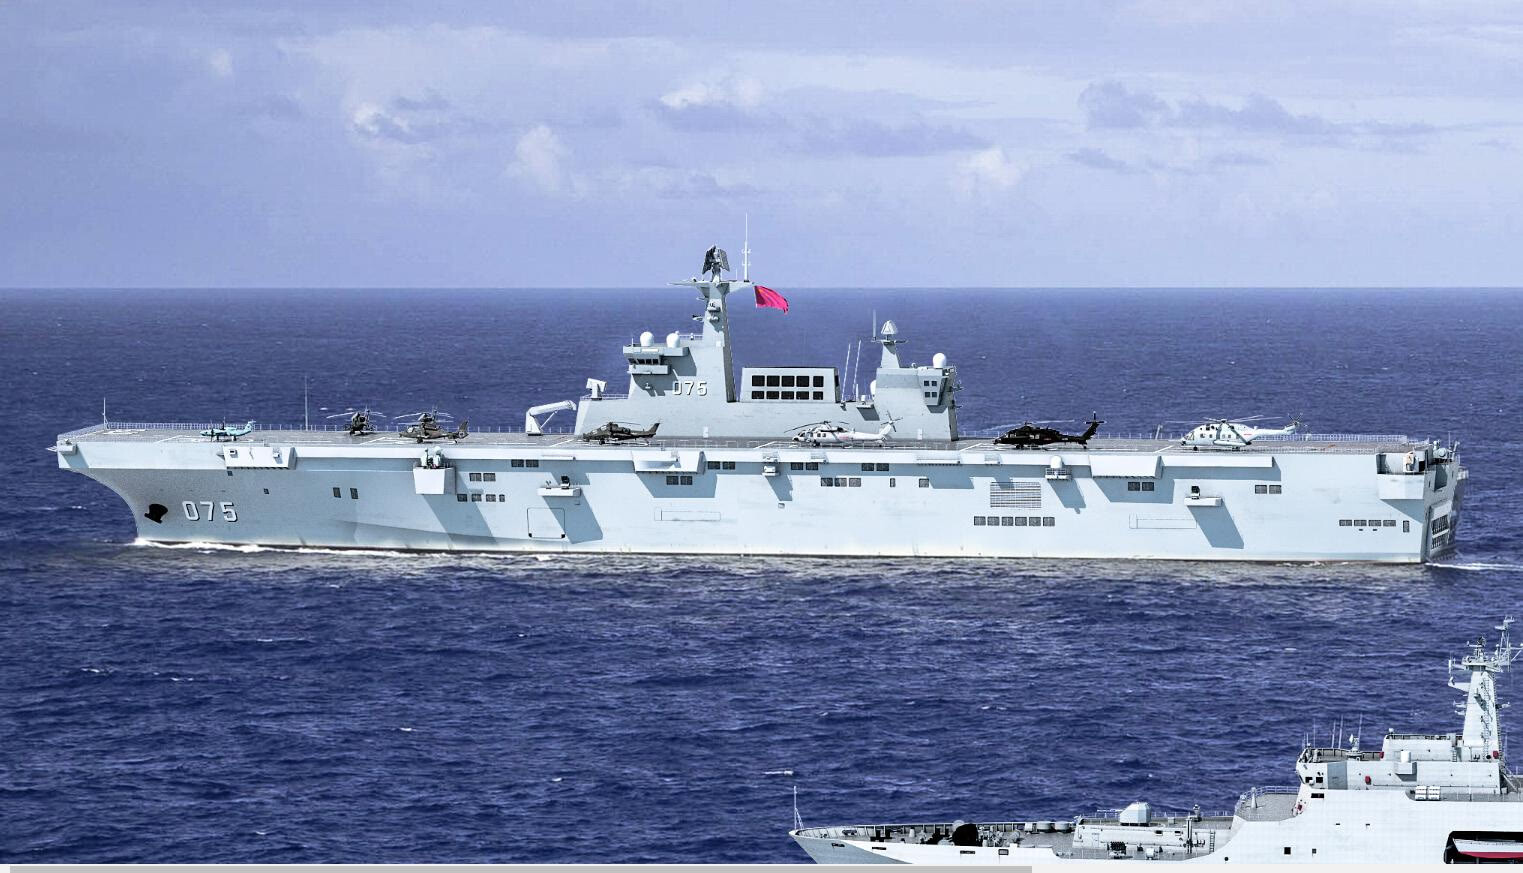 075二号舰服役在即,中国海军两栖攻击舰进展神速,075或建造8艘